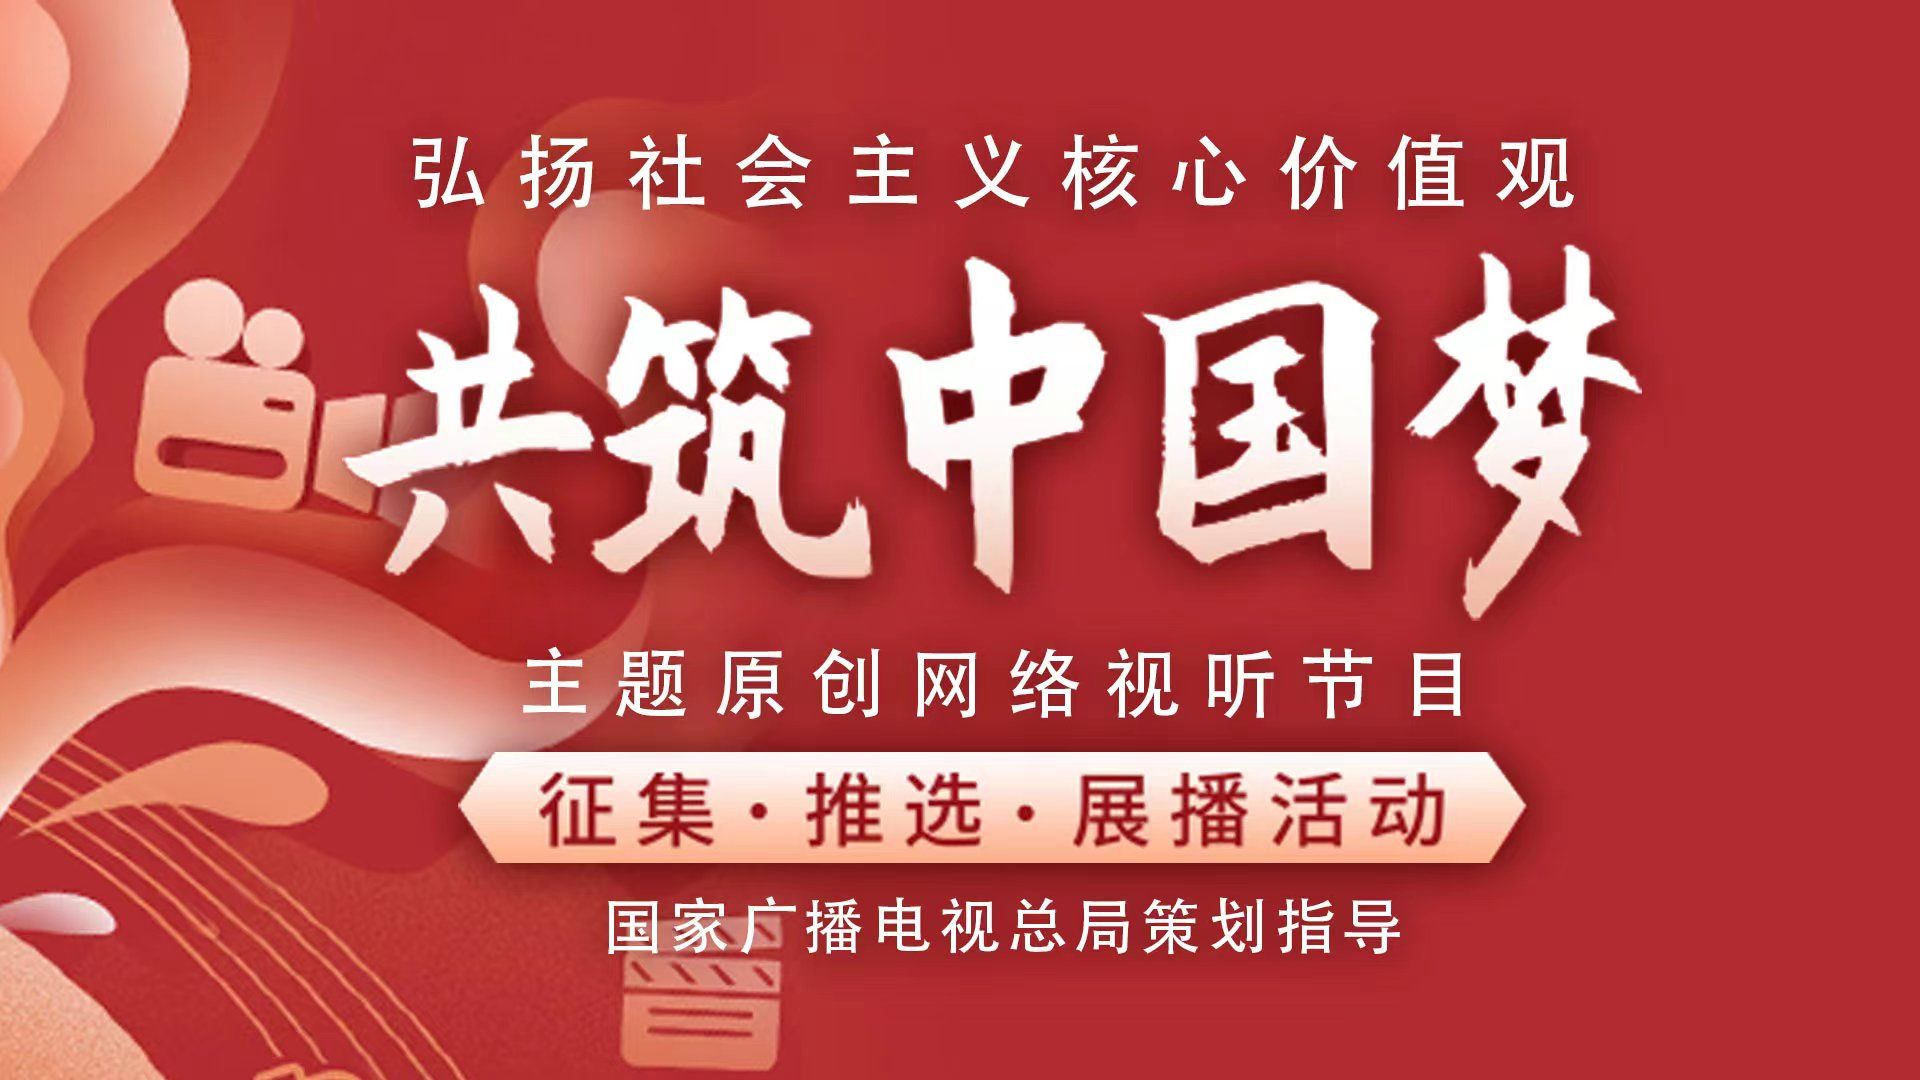 2022年“弘扬社会主义核心价值观 共筑中国梦”主题优秀网络视听节目展播